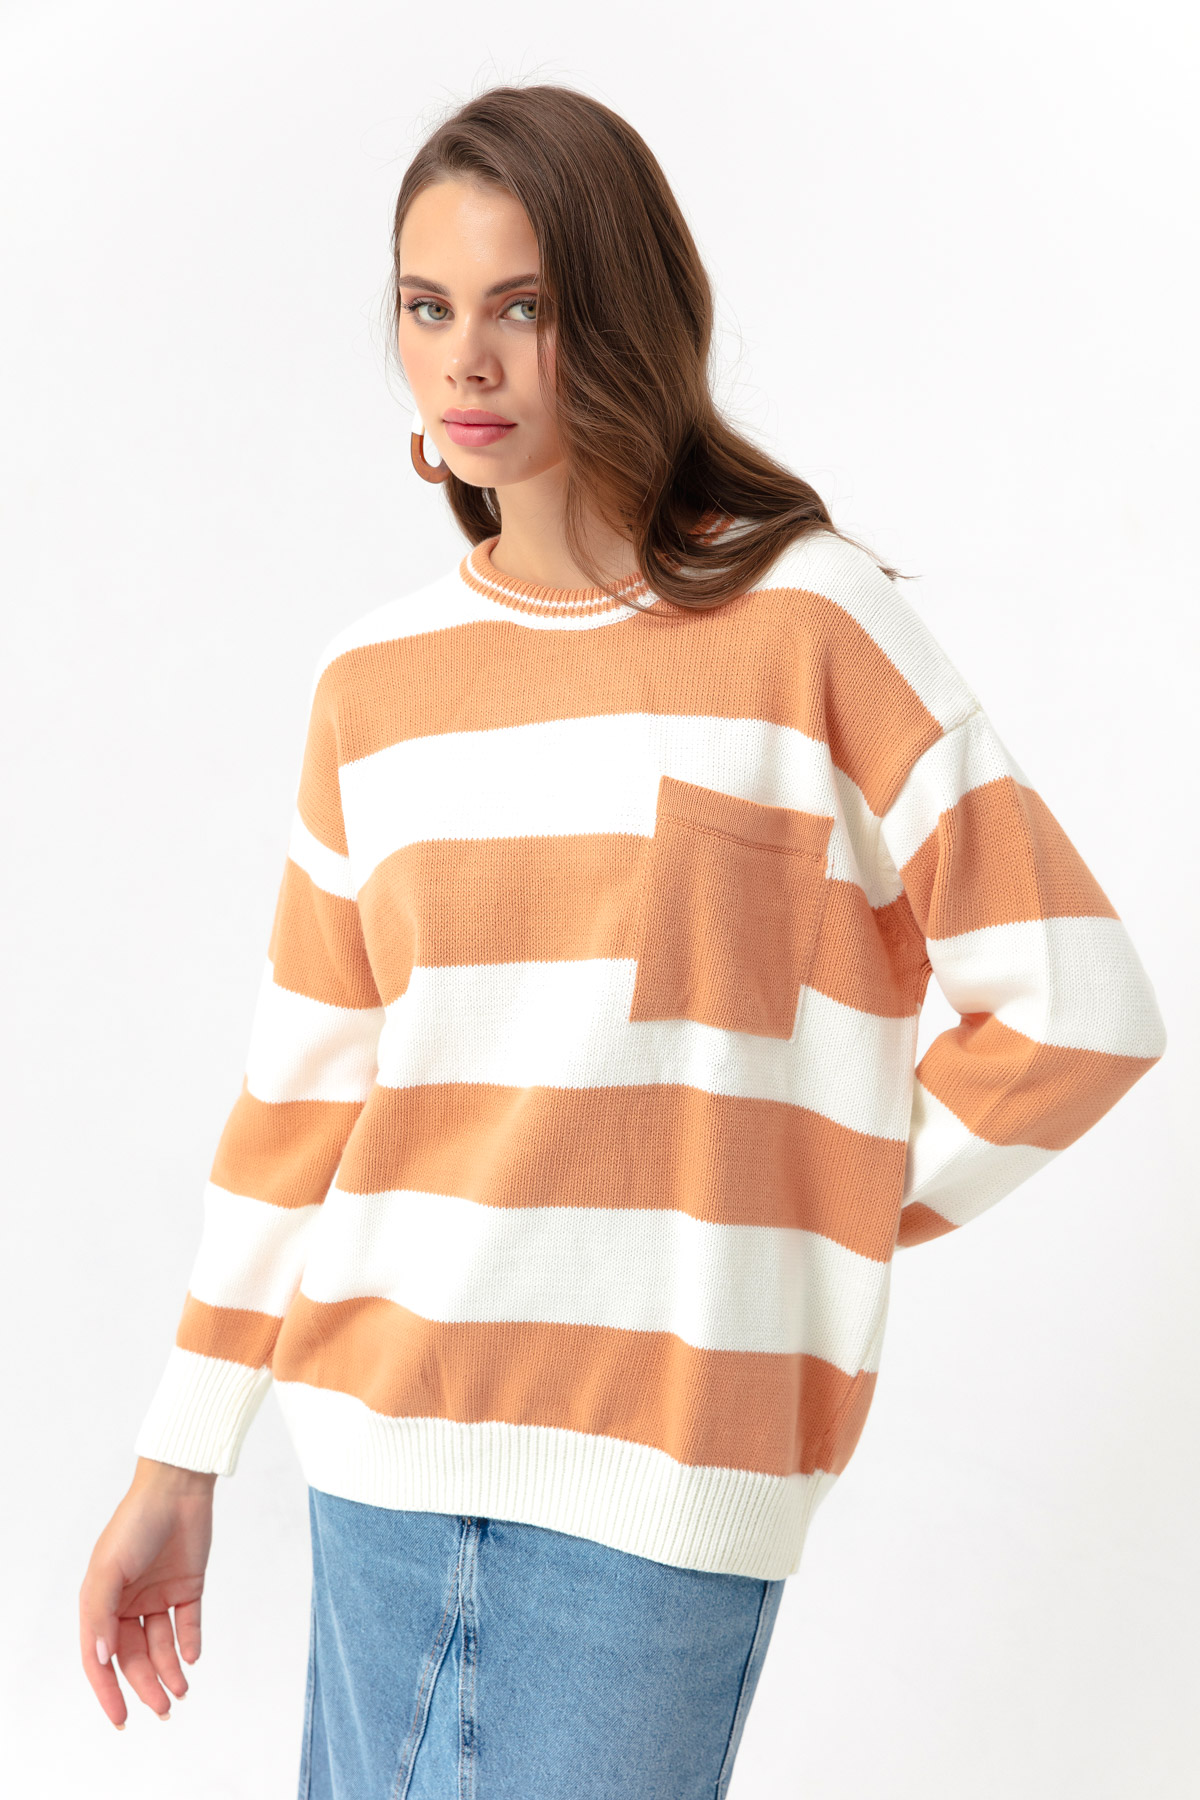 Women's Powder Striped Knitwear Sweater